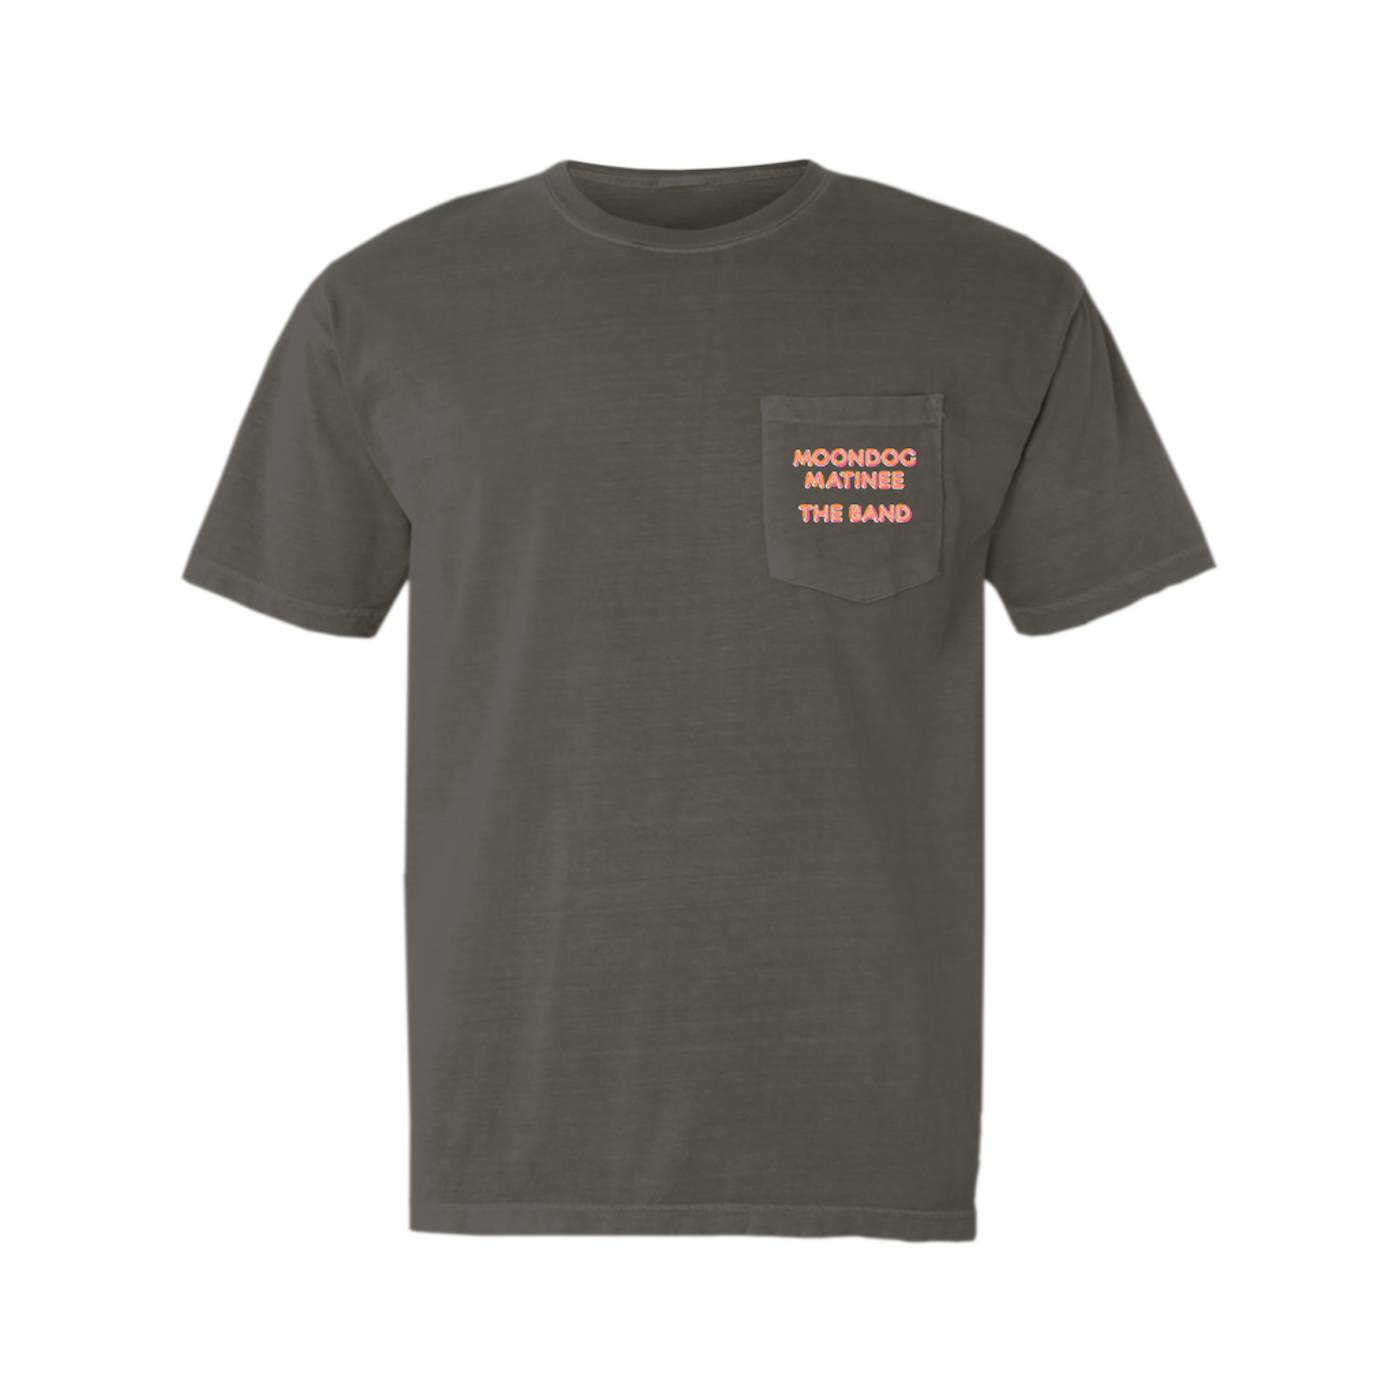 The Band T-Shirt | Moondog Matinee The Band Pocket T-shirt